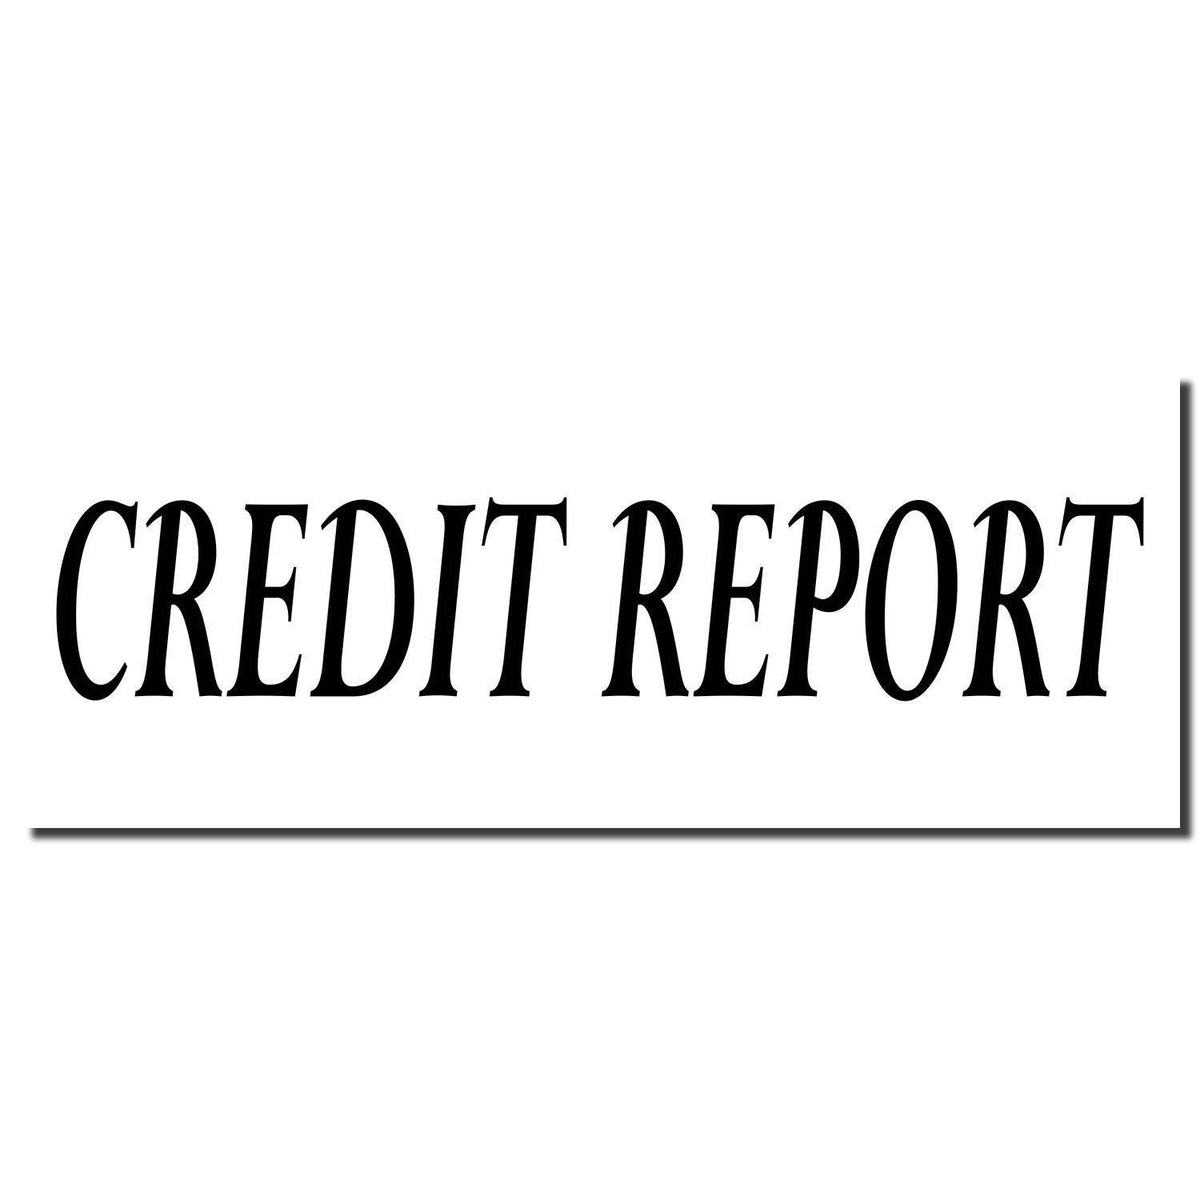 Enlarged Imprint Credit Report Rubber Stamp Sample